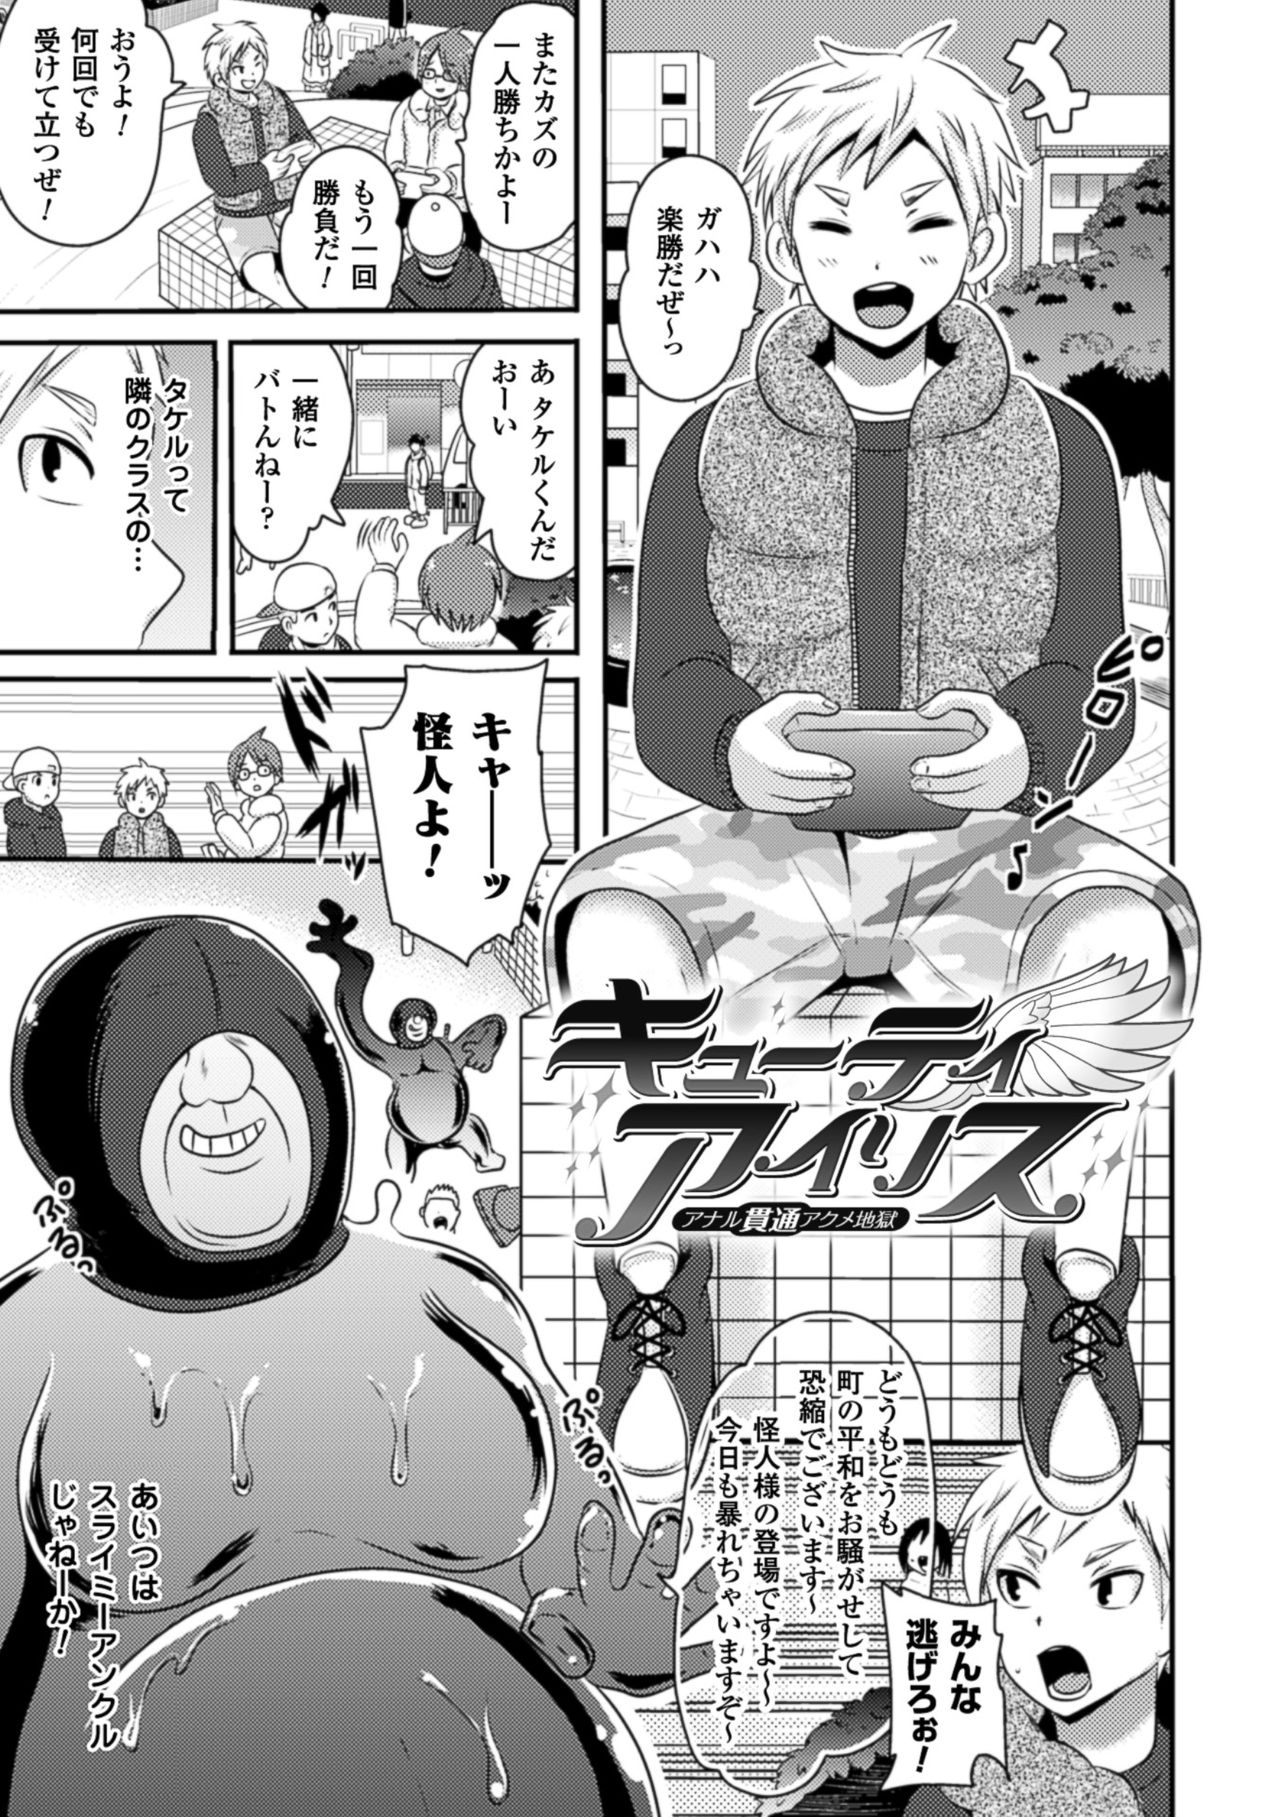 [Akuochisukii Sensei] Akuochisukii Sensei no Heroine Haiboku no Houteishiki - Equation of Heroine's defeat by Mr. Akuochisukii [Digital] 26